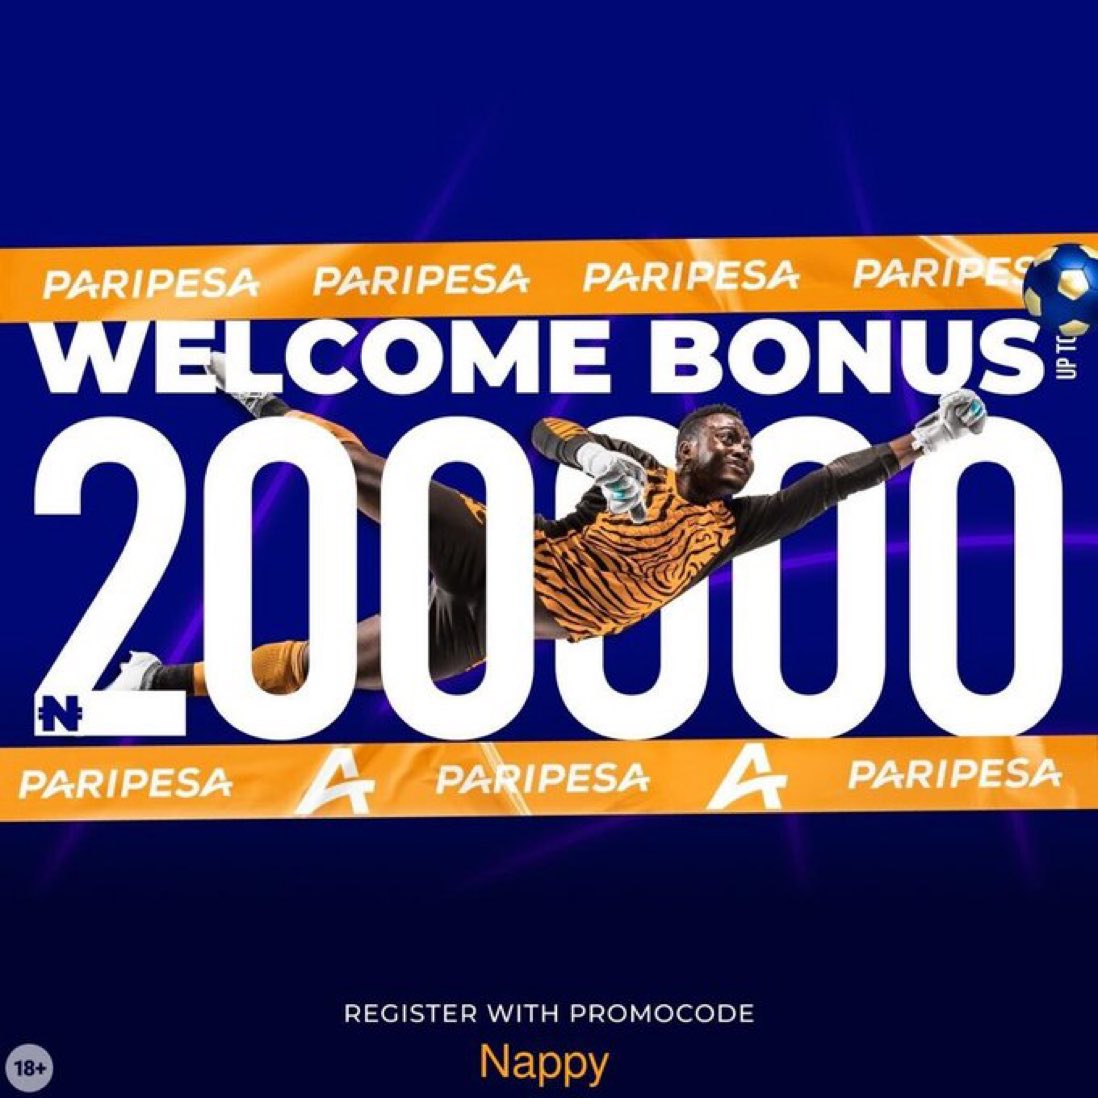 I made 500k with the 200k registration bonus i got when i registered on paripesa Register here cutt.ly/lw5eN6JJ to get yours